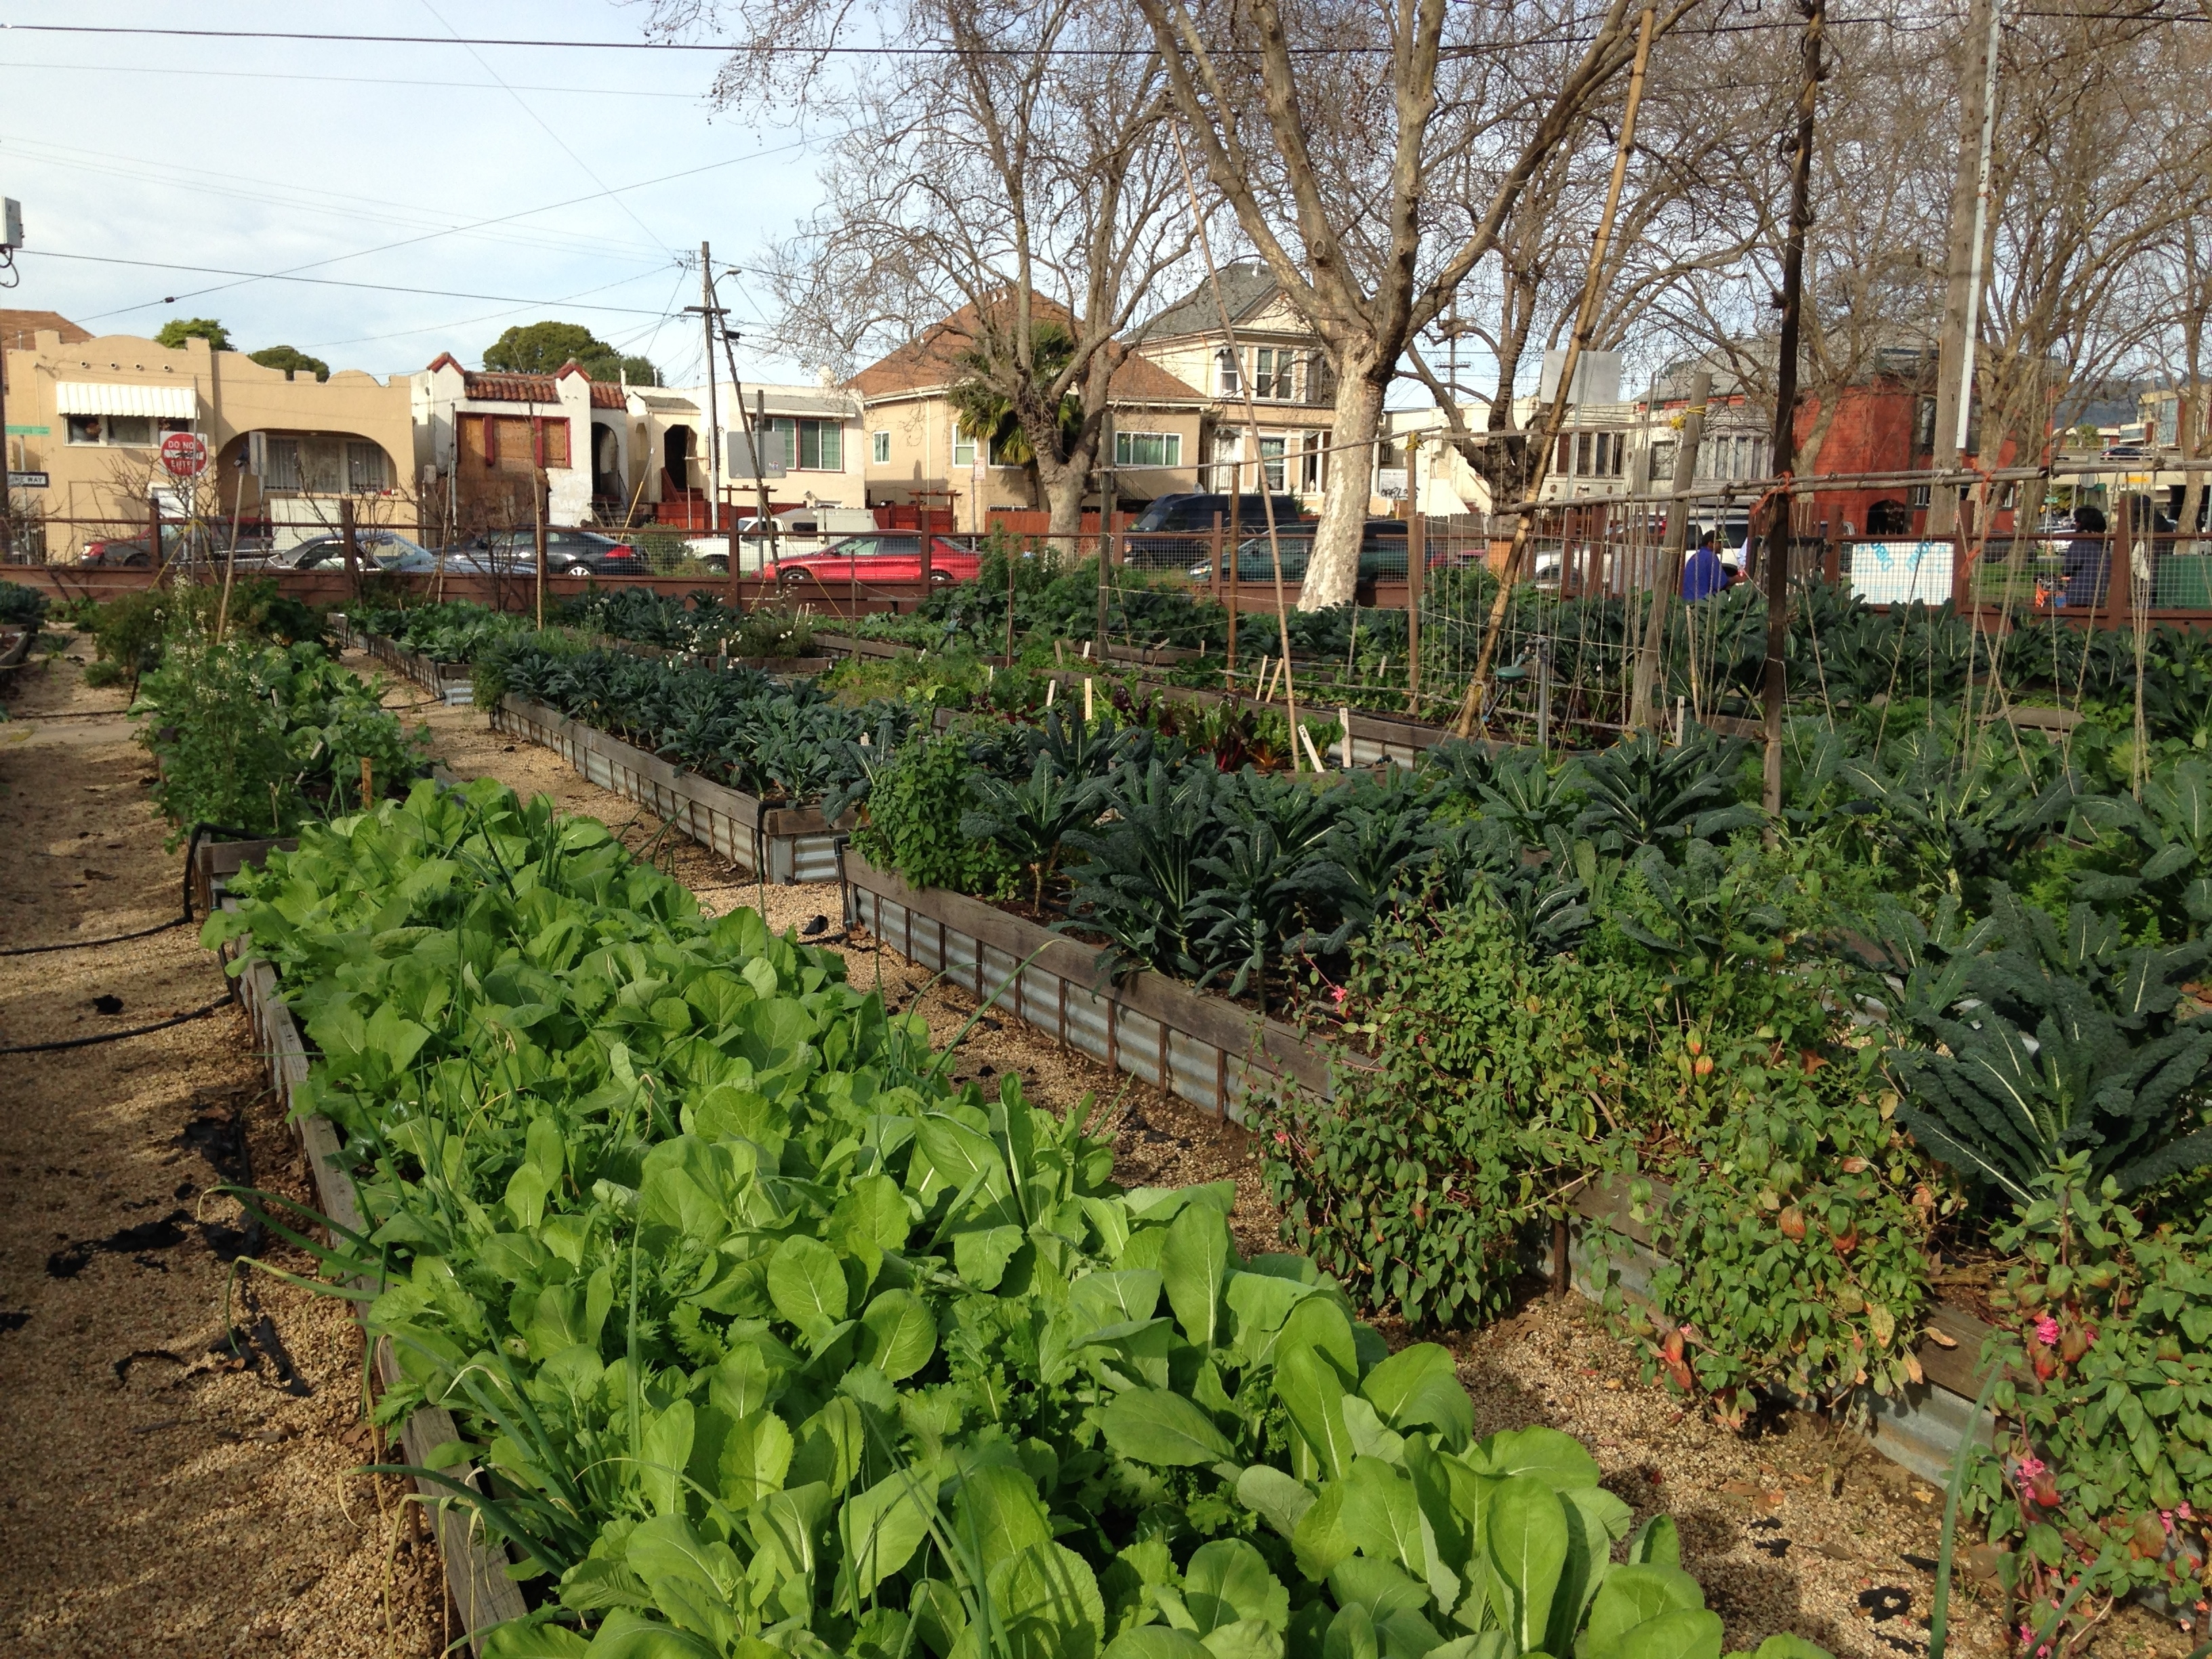 Community gardens and urban farming